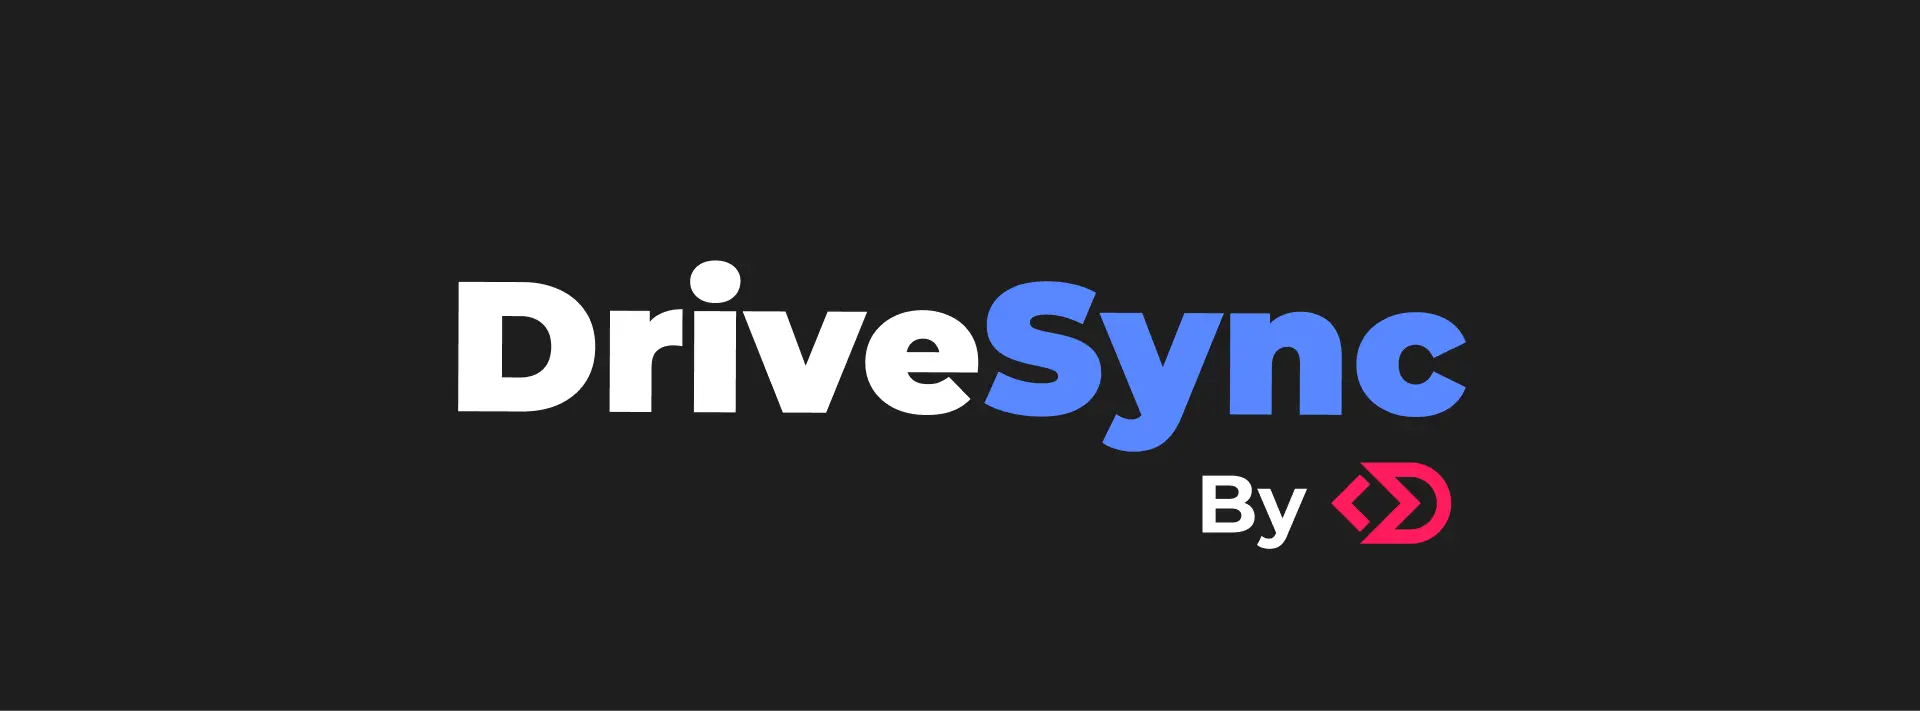 DriveSync: Revoluționăm Închirierea Auto între Persoane